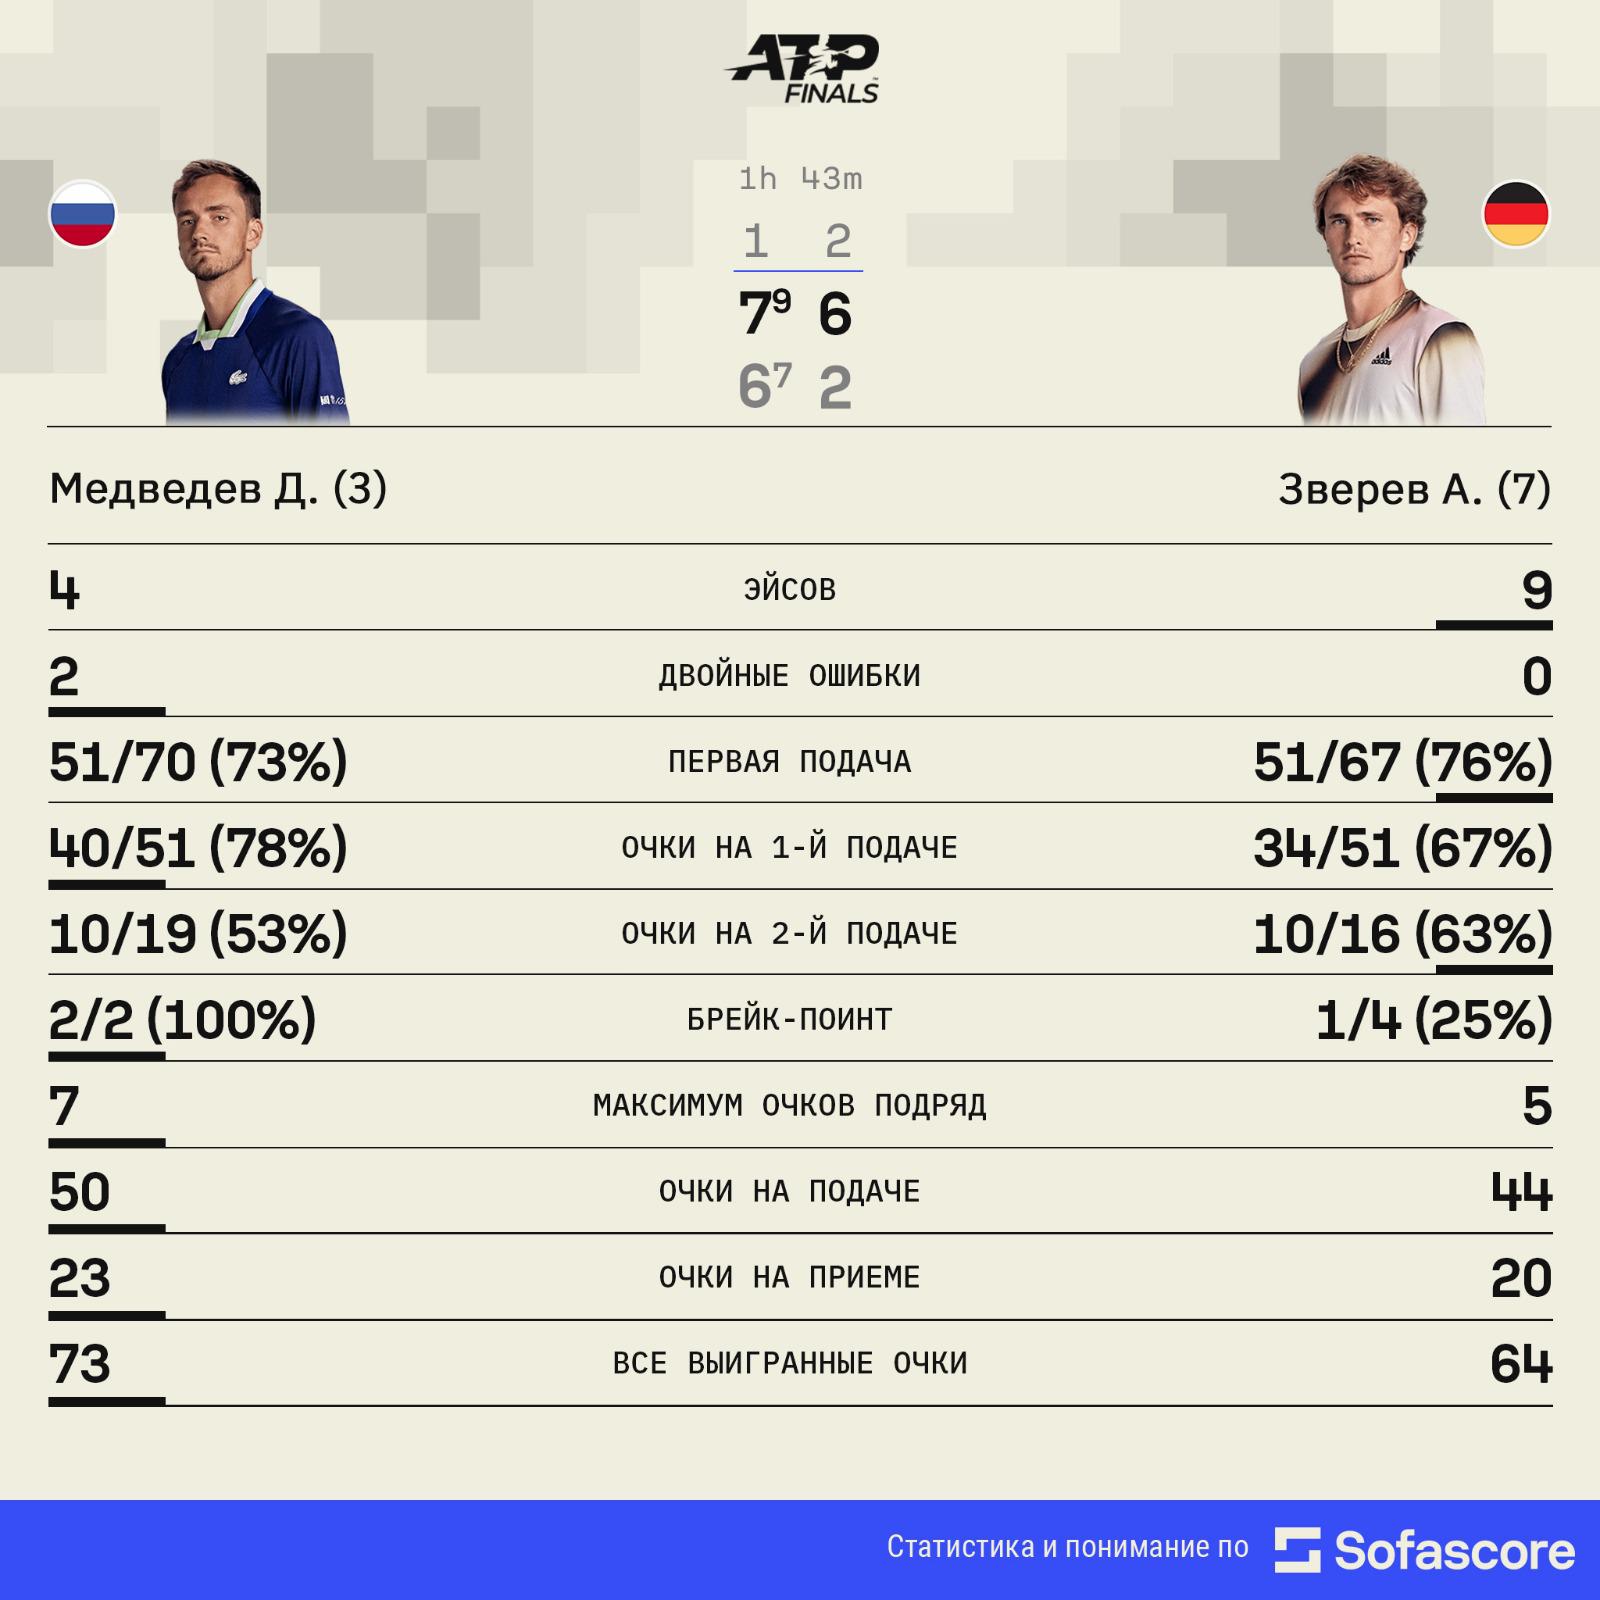 Медведев победил Зверева на Итоговом турнире ATP и вышел в полуфинал